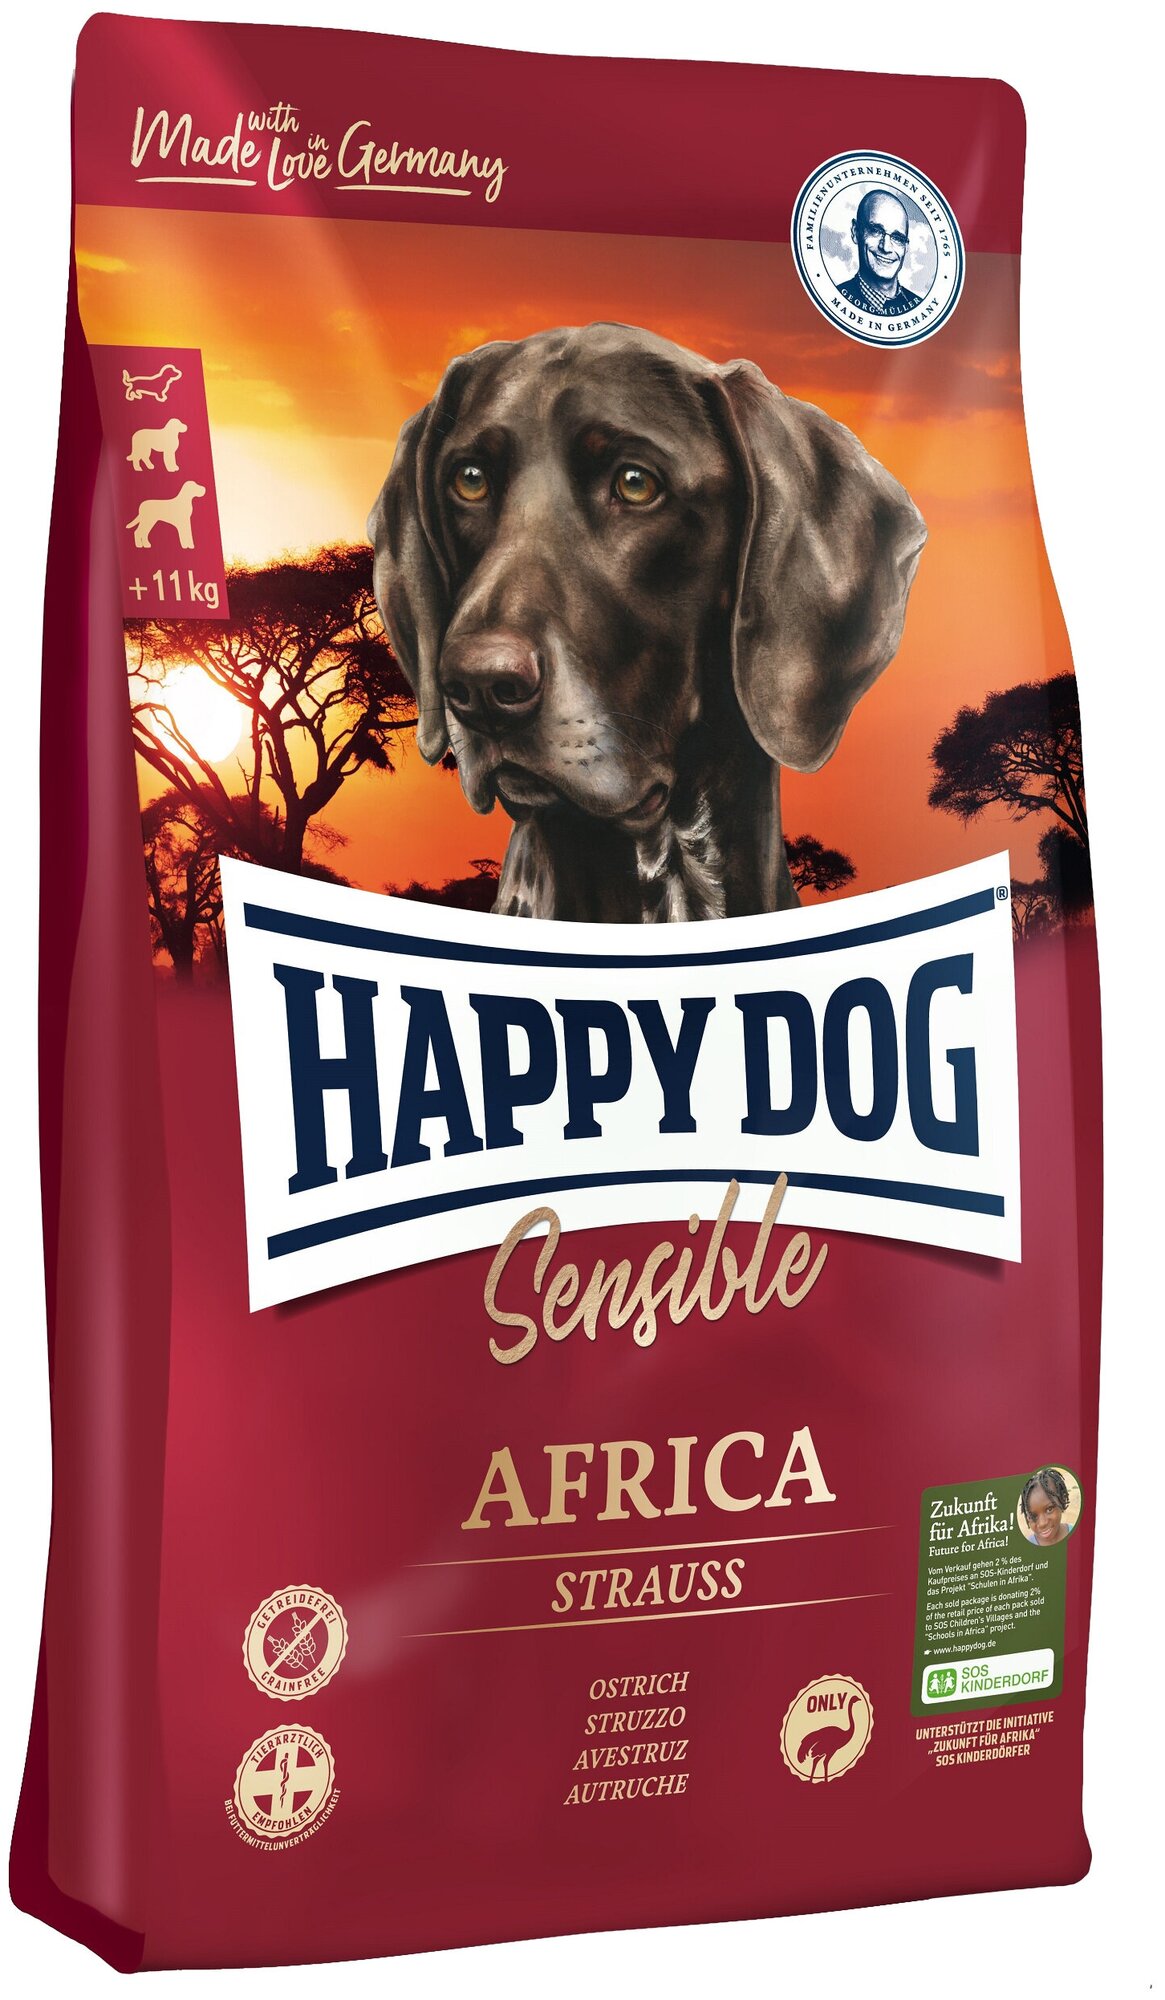 Сухой корм для собак Happy Dog Supreme Sensible страус, с картофелем 1 уп. х 1 шт. х 4 кг (для средних и крупных пород)